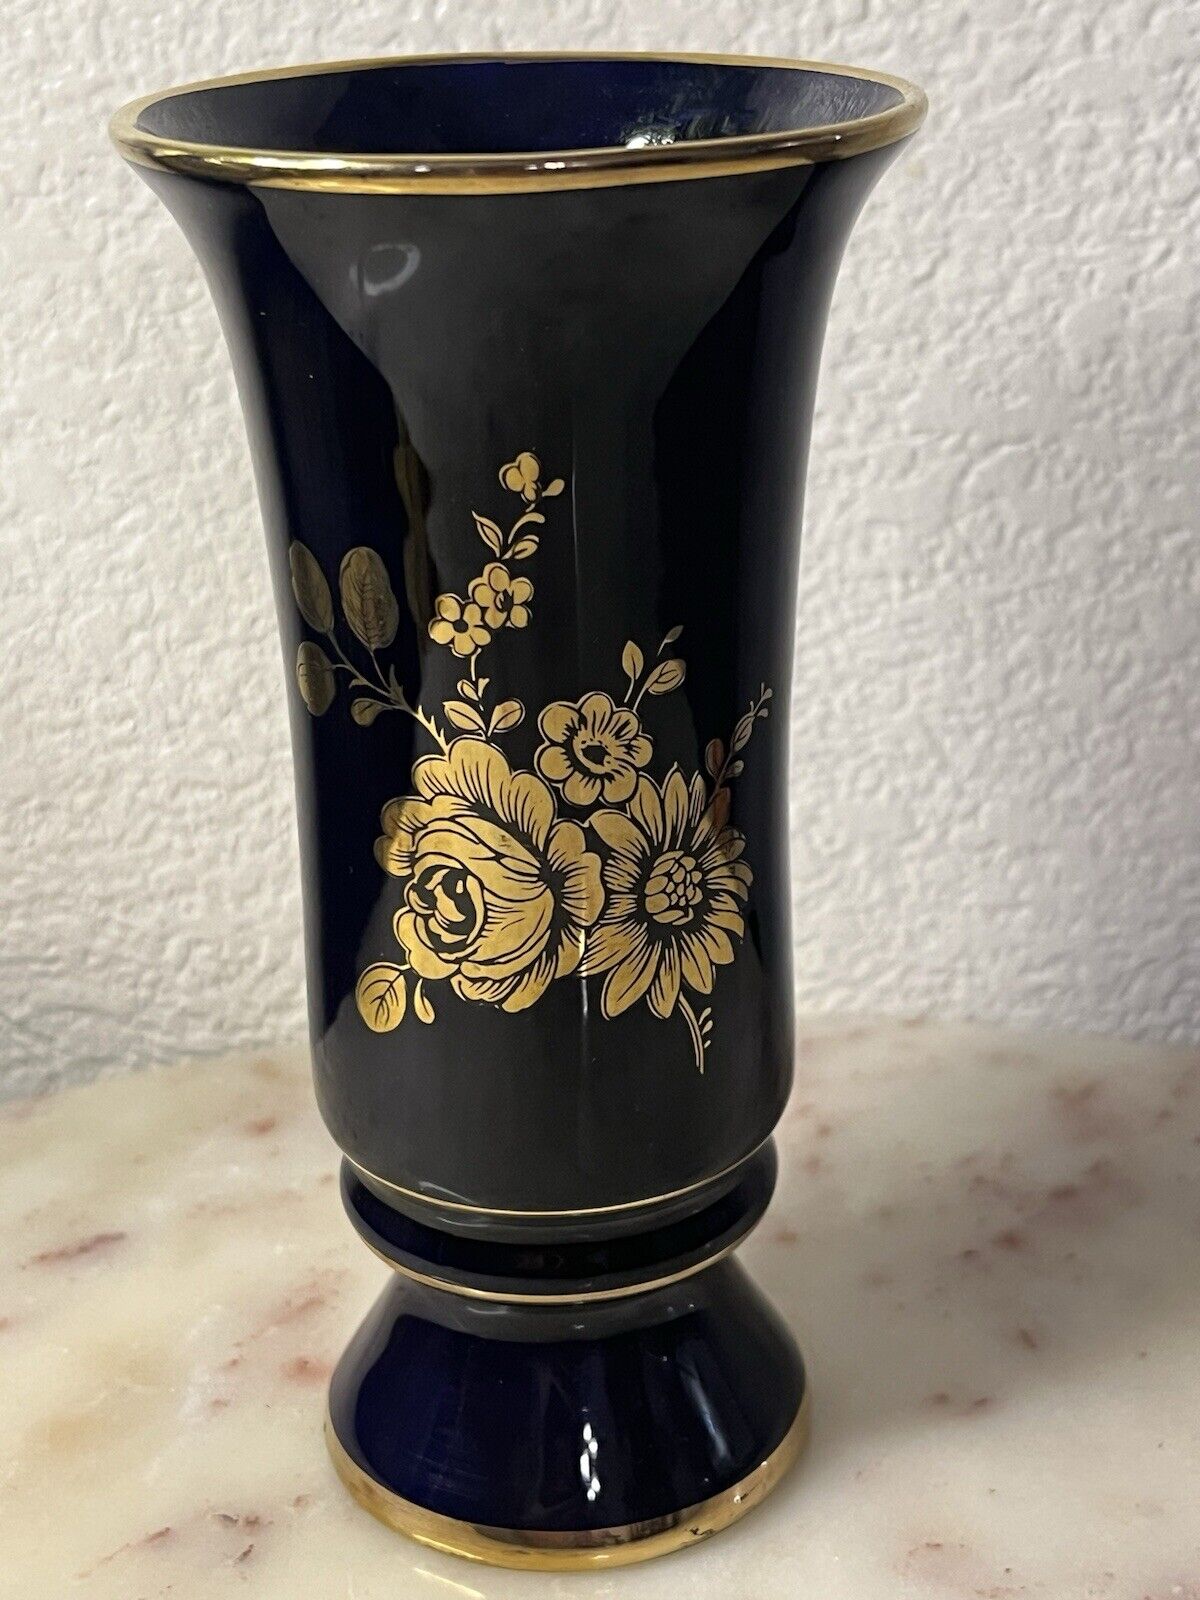 Cobalt Blue with Gold Floral Center / Gold Trimmed Vase (Signed)